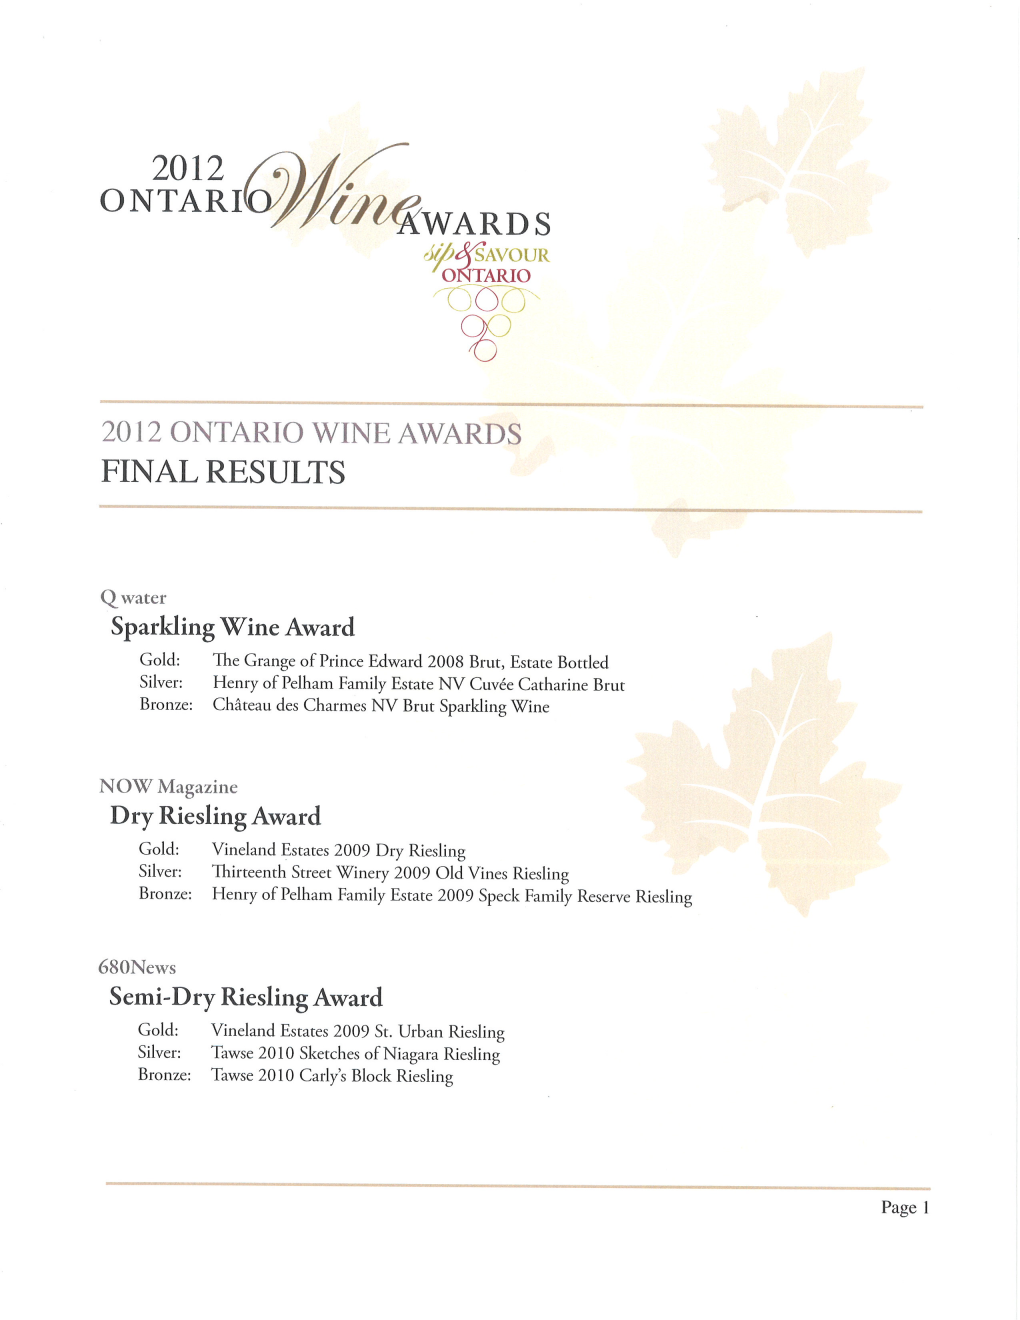 Ontario Wine Awards 2012